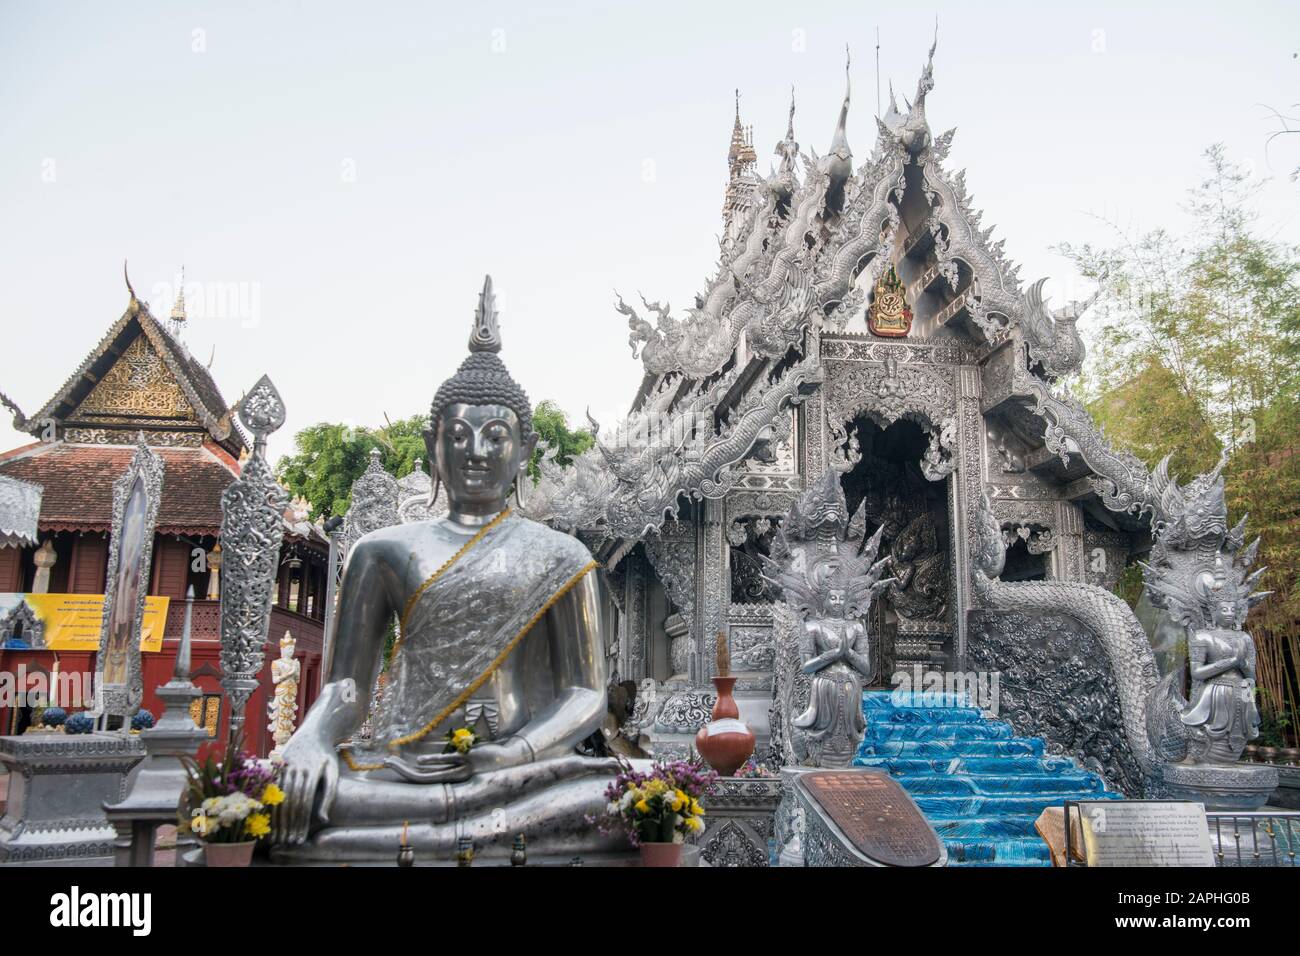 Le Temple d'argent ou Wat Sri Suphan dans la ville de Chiang Mai au nord de la Thaïlande. Thaïlande, Chiang Mai, Novembre 2019 Banque D'Images